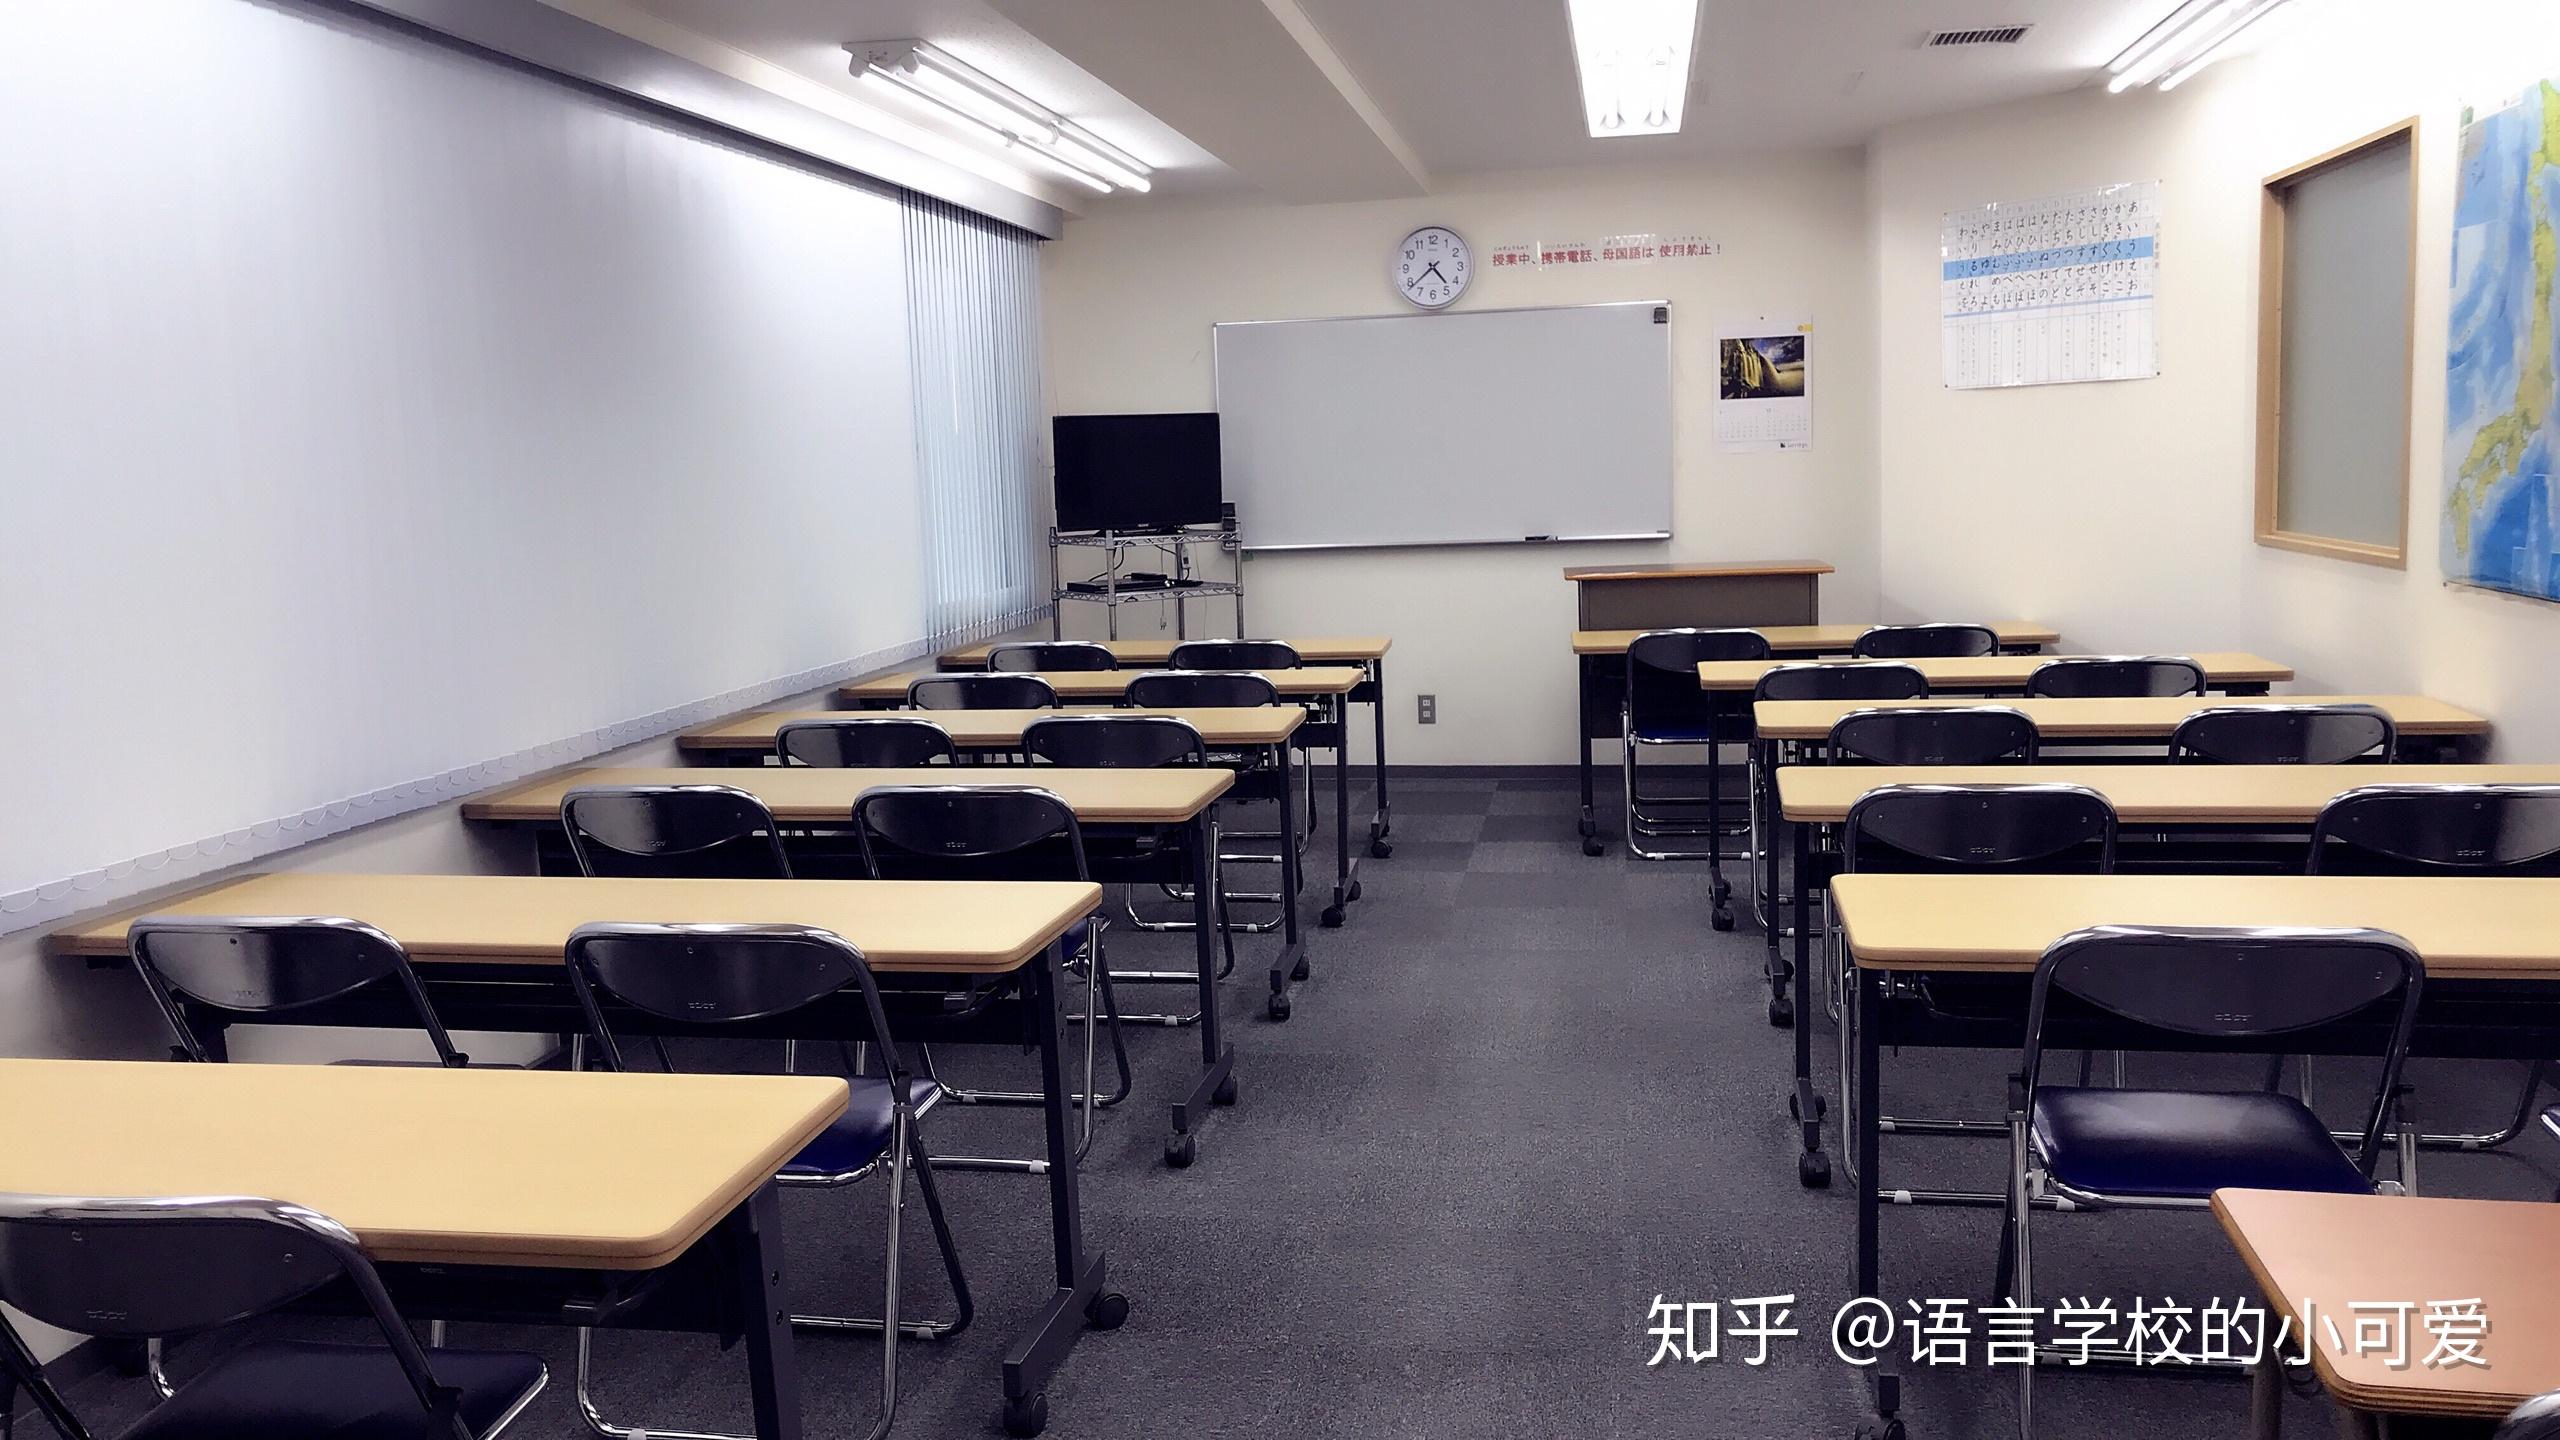 去日本读语言学校准备留考,东京新宿区好的语